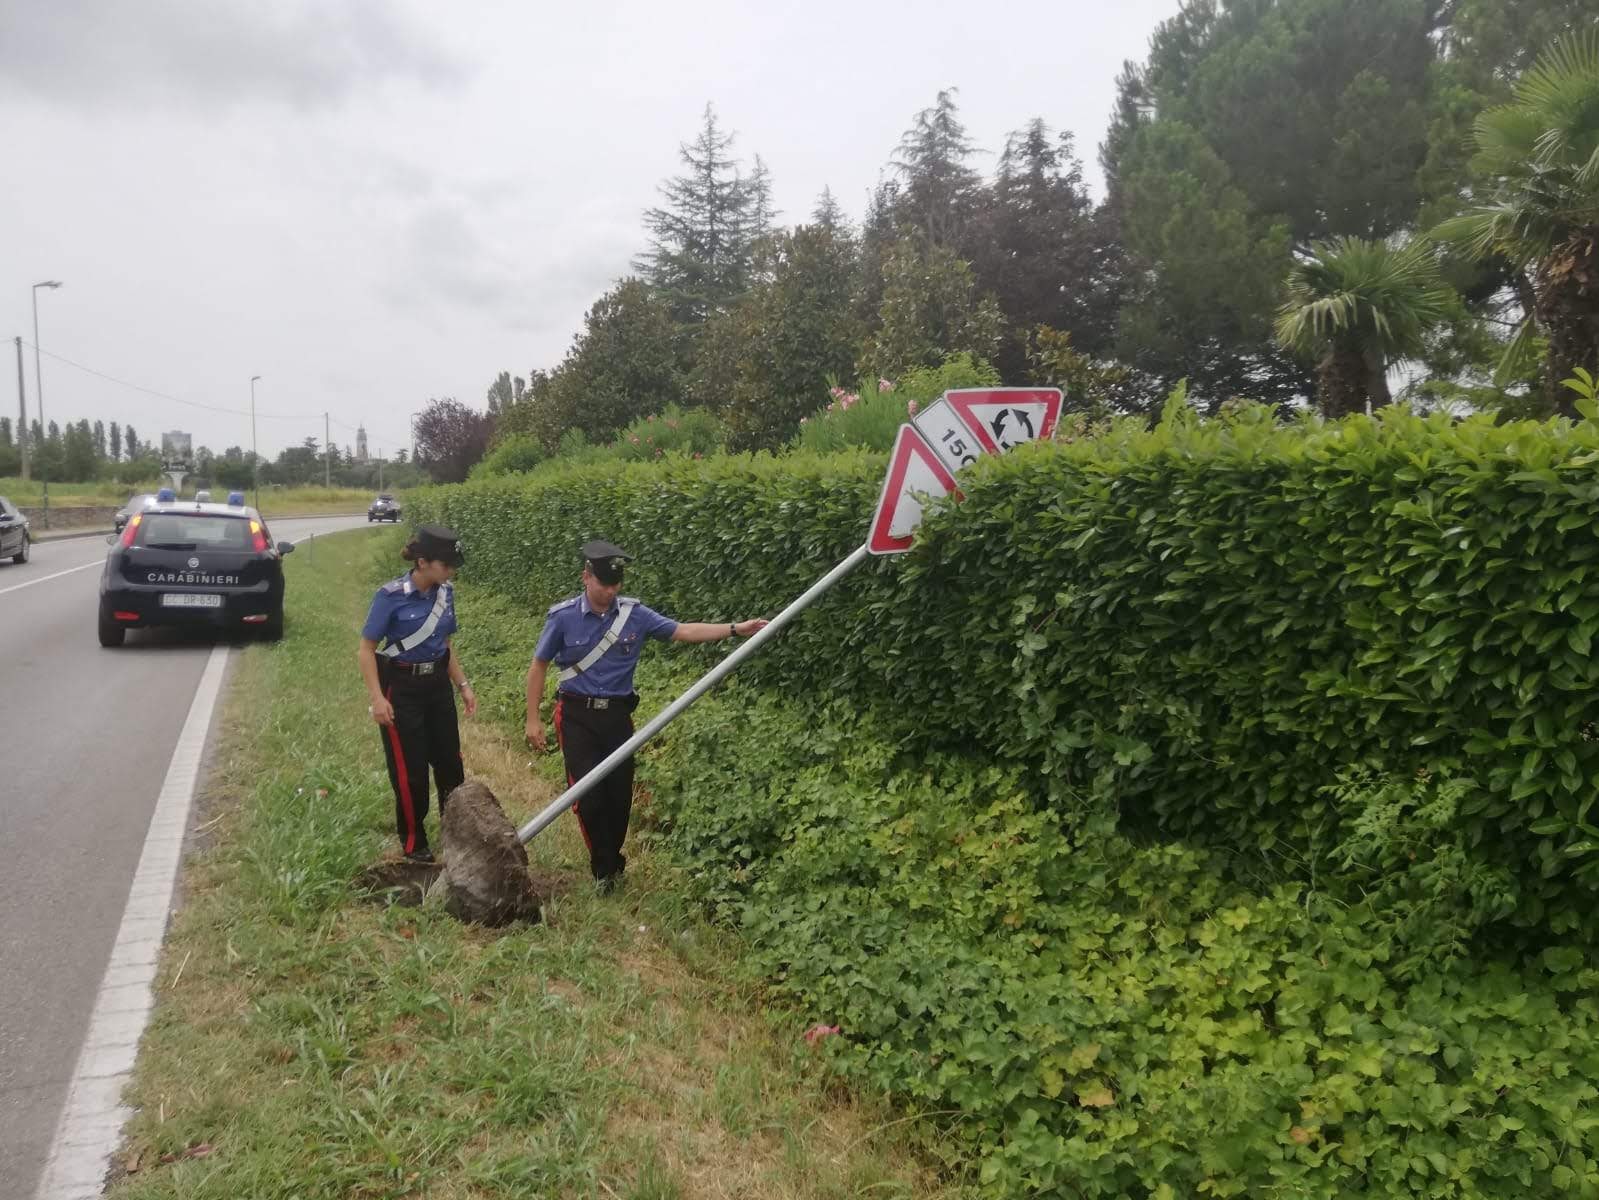 Sradicano per divertimento la segnaletica stradale, fermati tre olandesi a Lazise